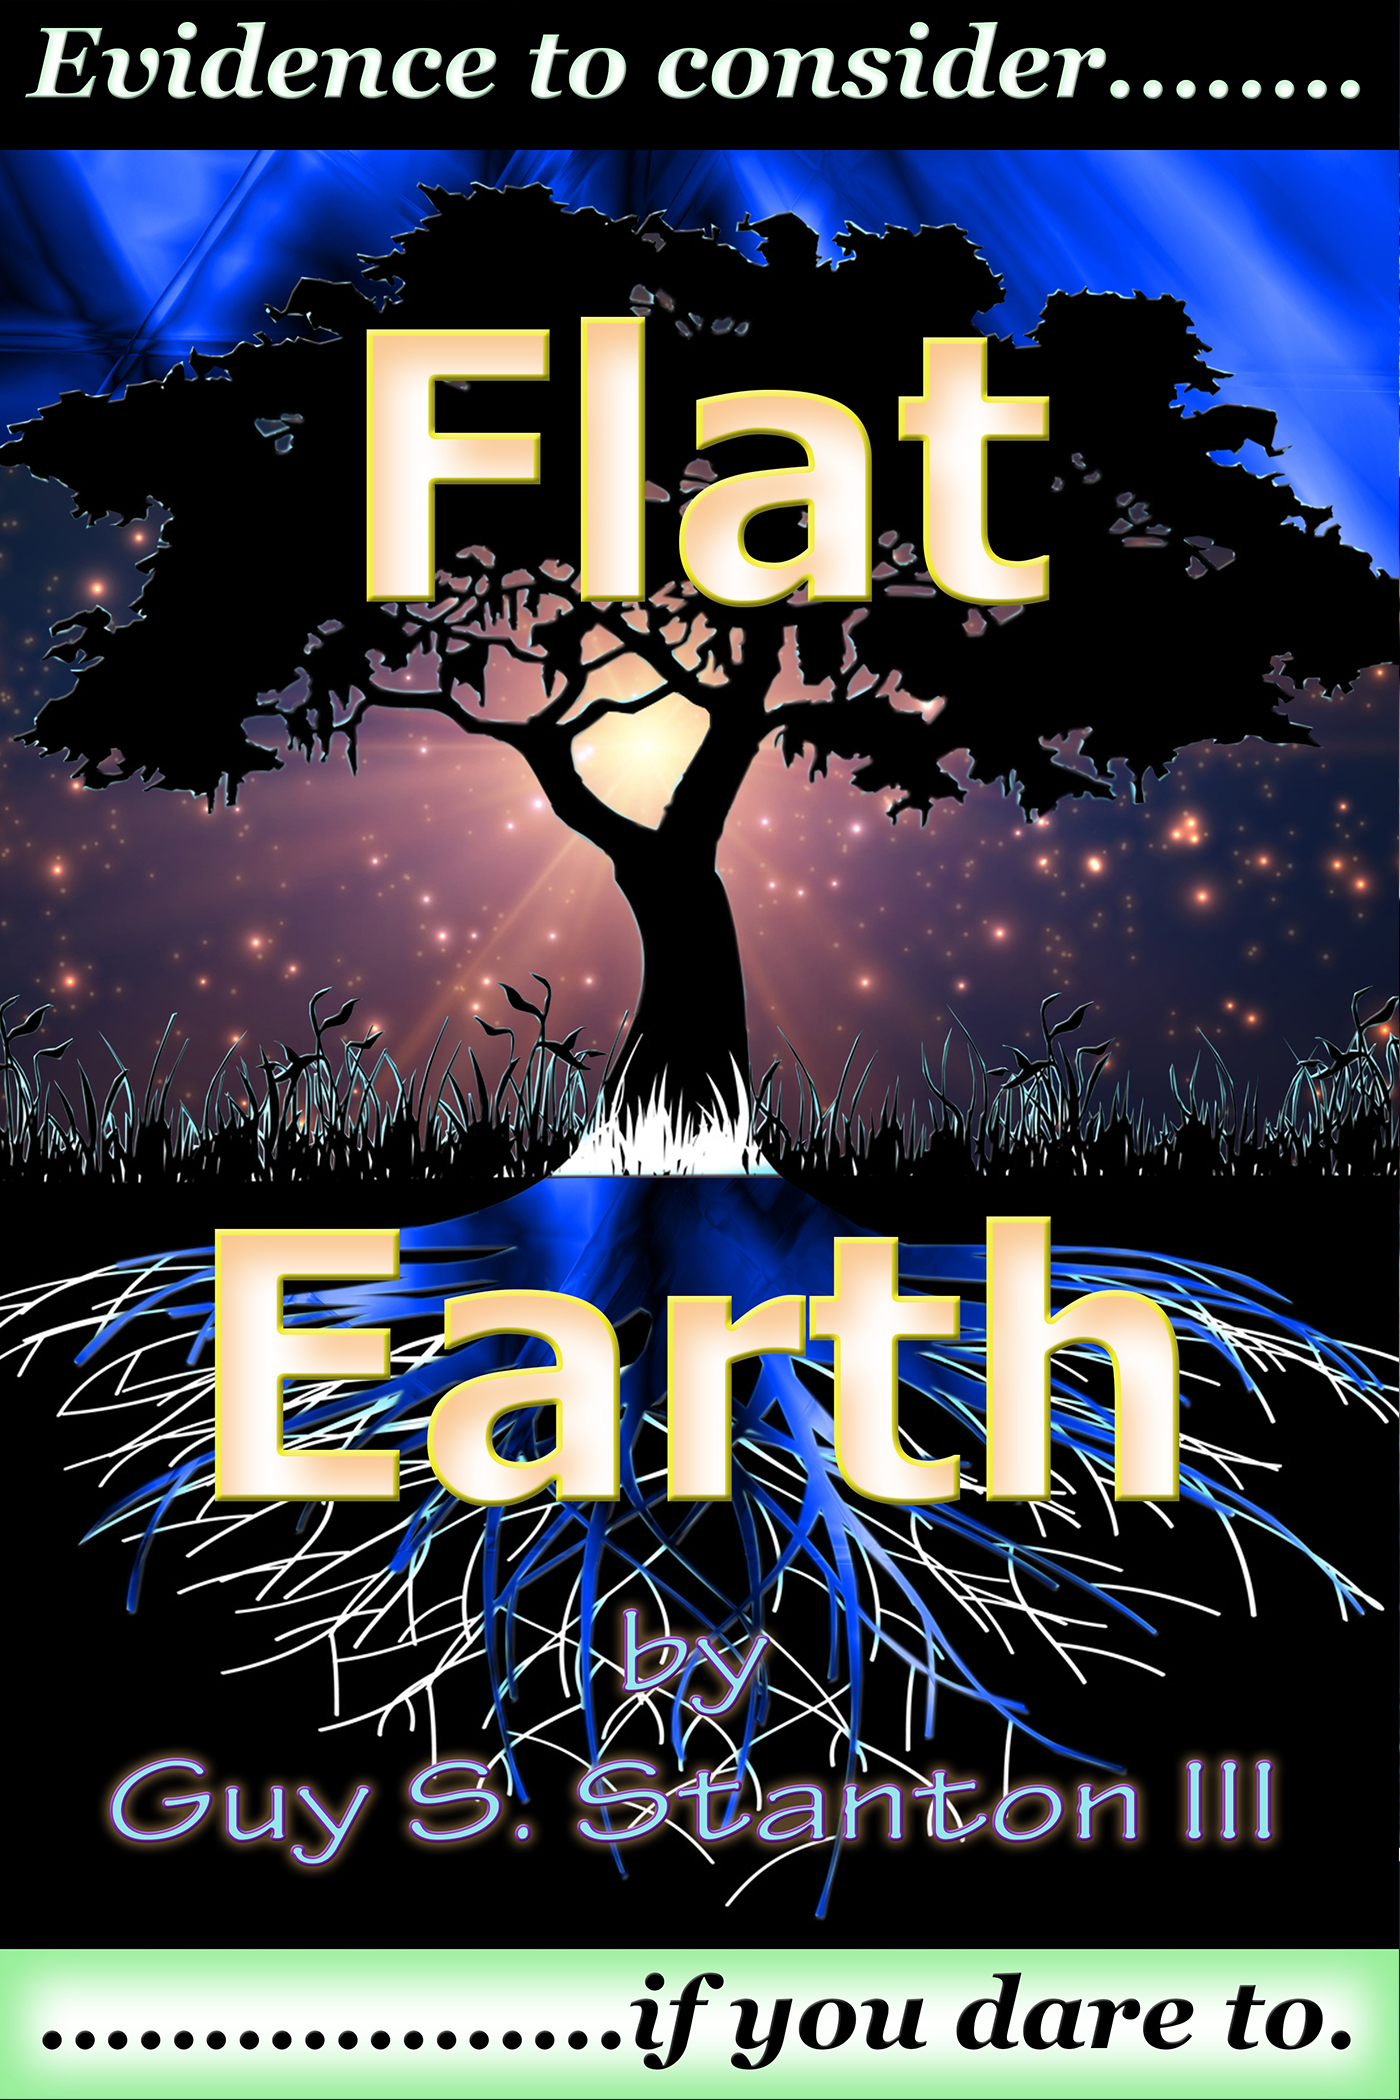 Stanton III Guy S Flat Earth.jpg